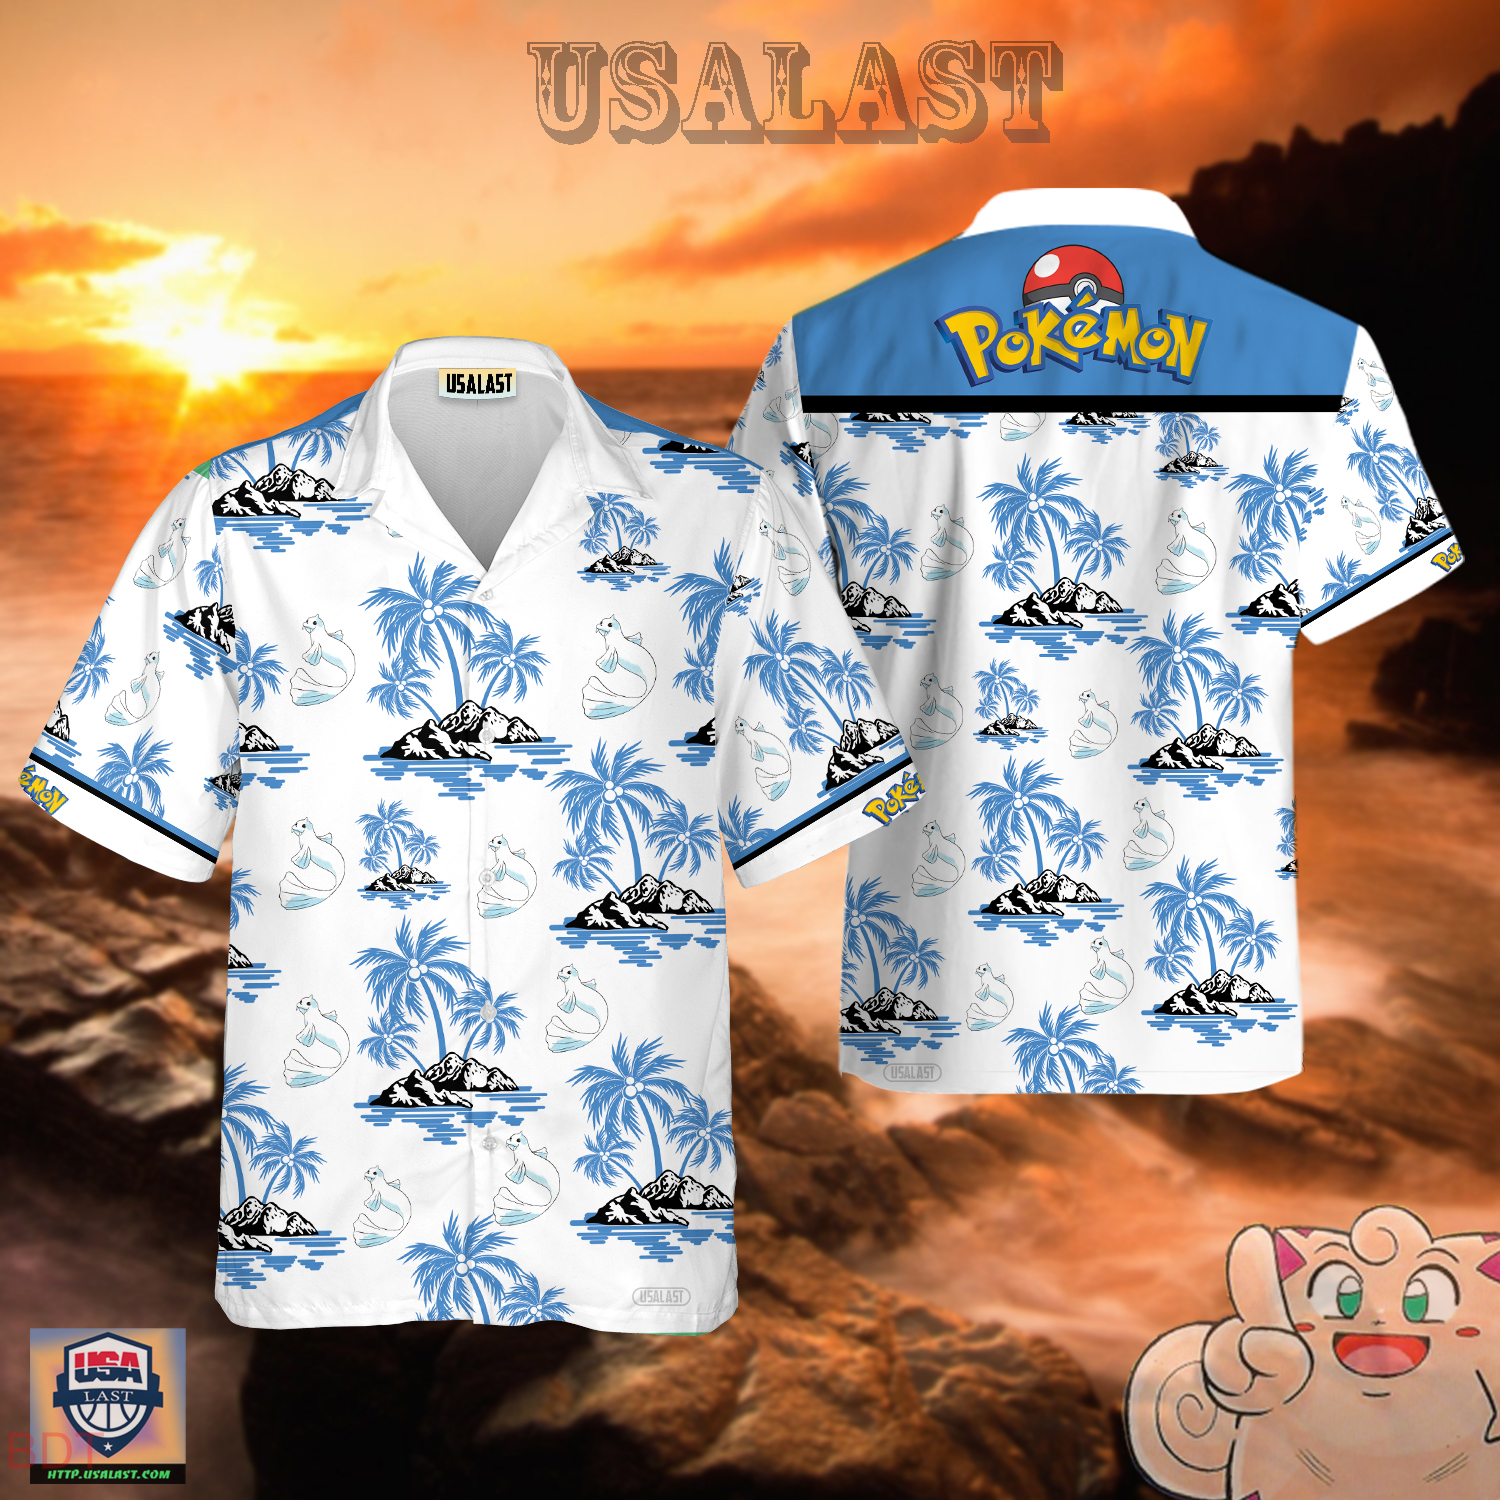 Dewgong Pokemon Hawaiian Shirt – Usalast